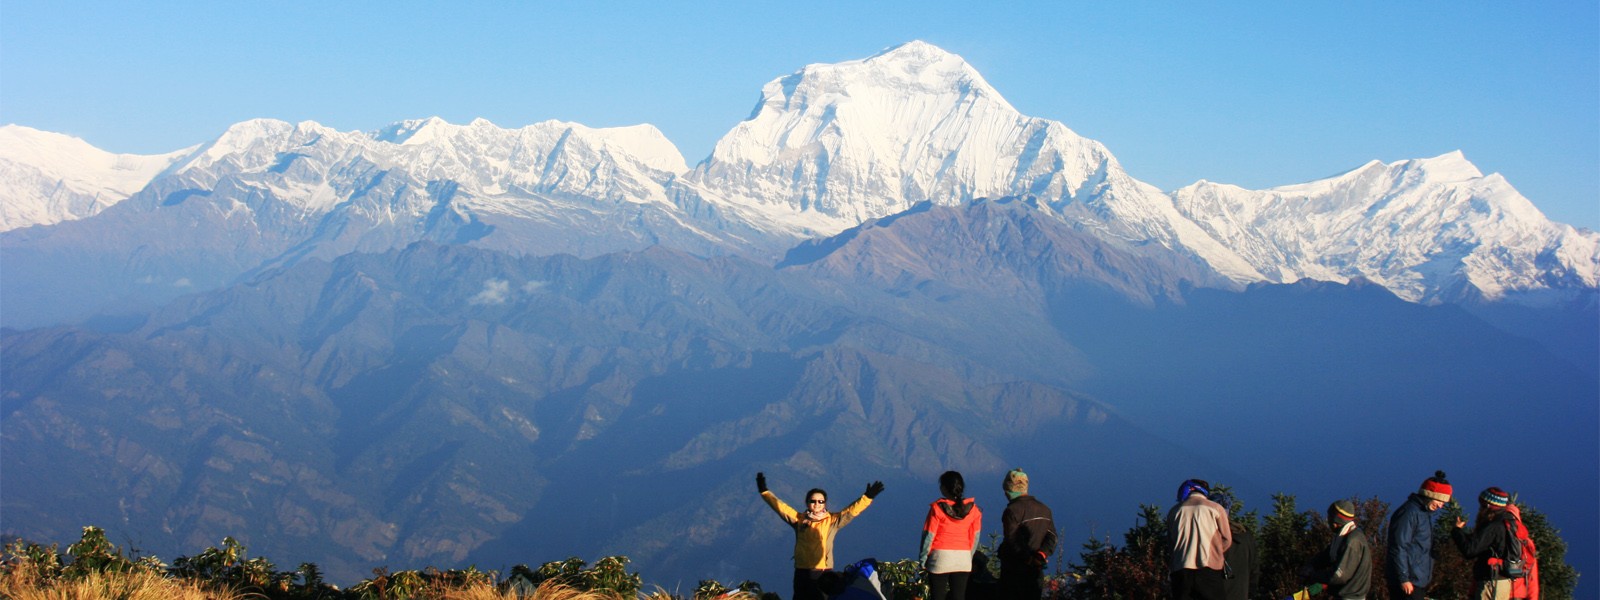 Annapurna, Chitwan and Everest - A combining Trek